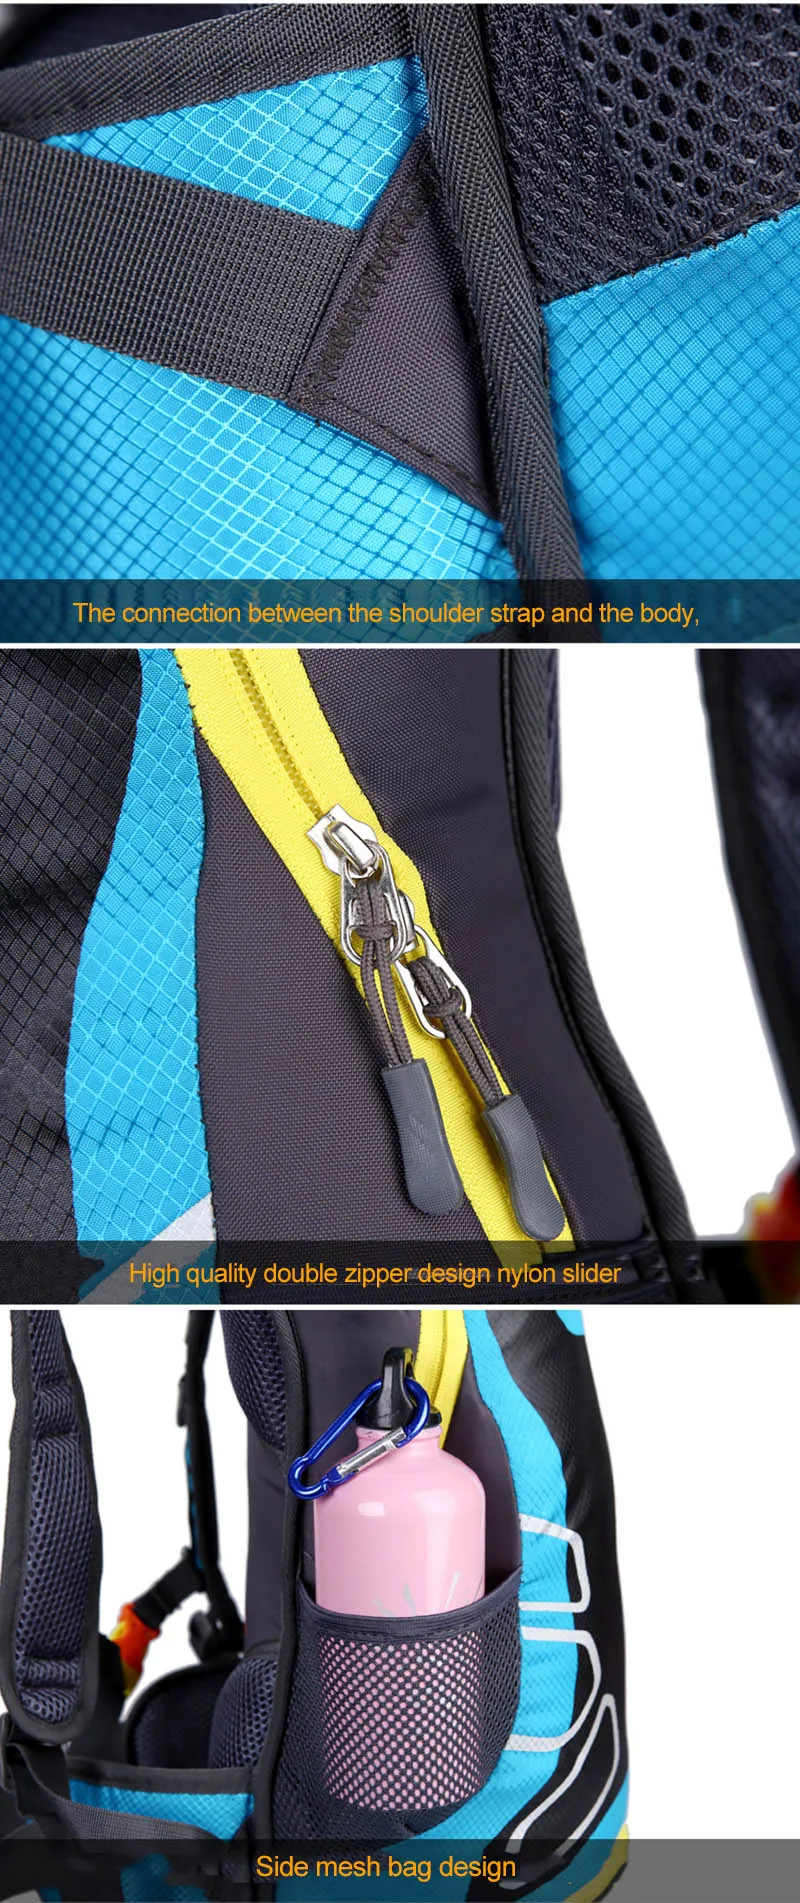 15л сумки для велоспорта баскетбольный сетчатый рюкзак для спорта на открытом воздухе велосипедный походный рюкзак для кемпинга с отражающей полоской